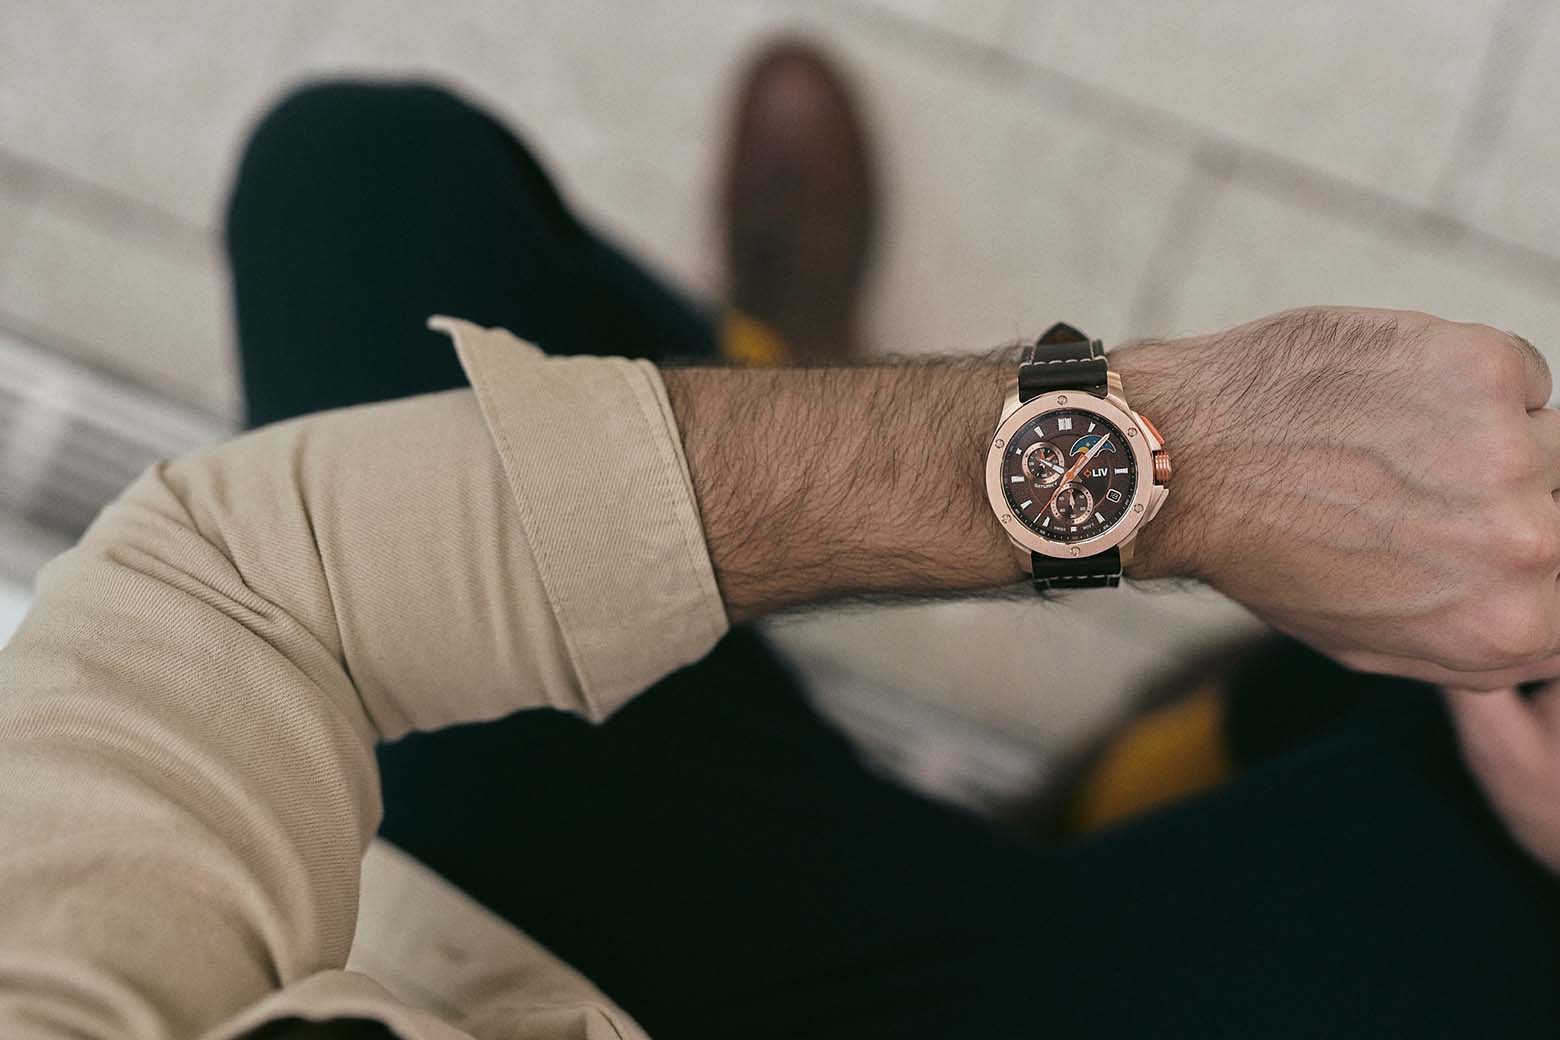 luxury watch brands liv watches - Luxe Digital